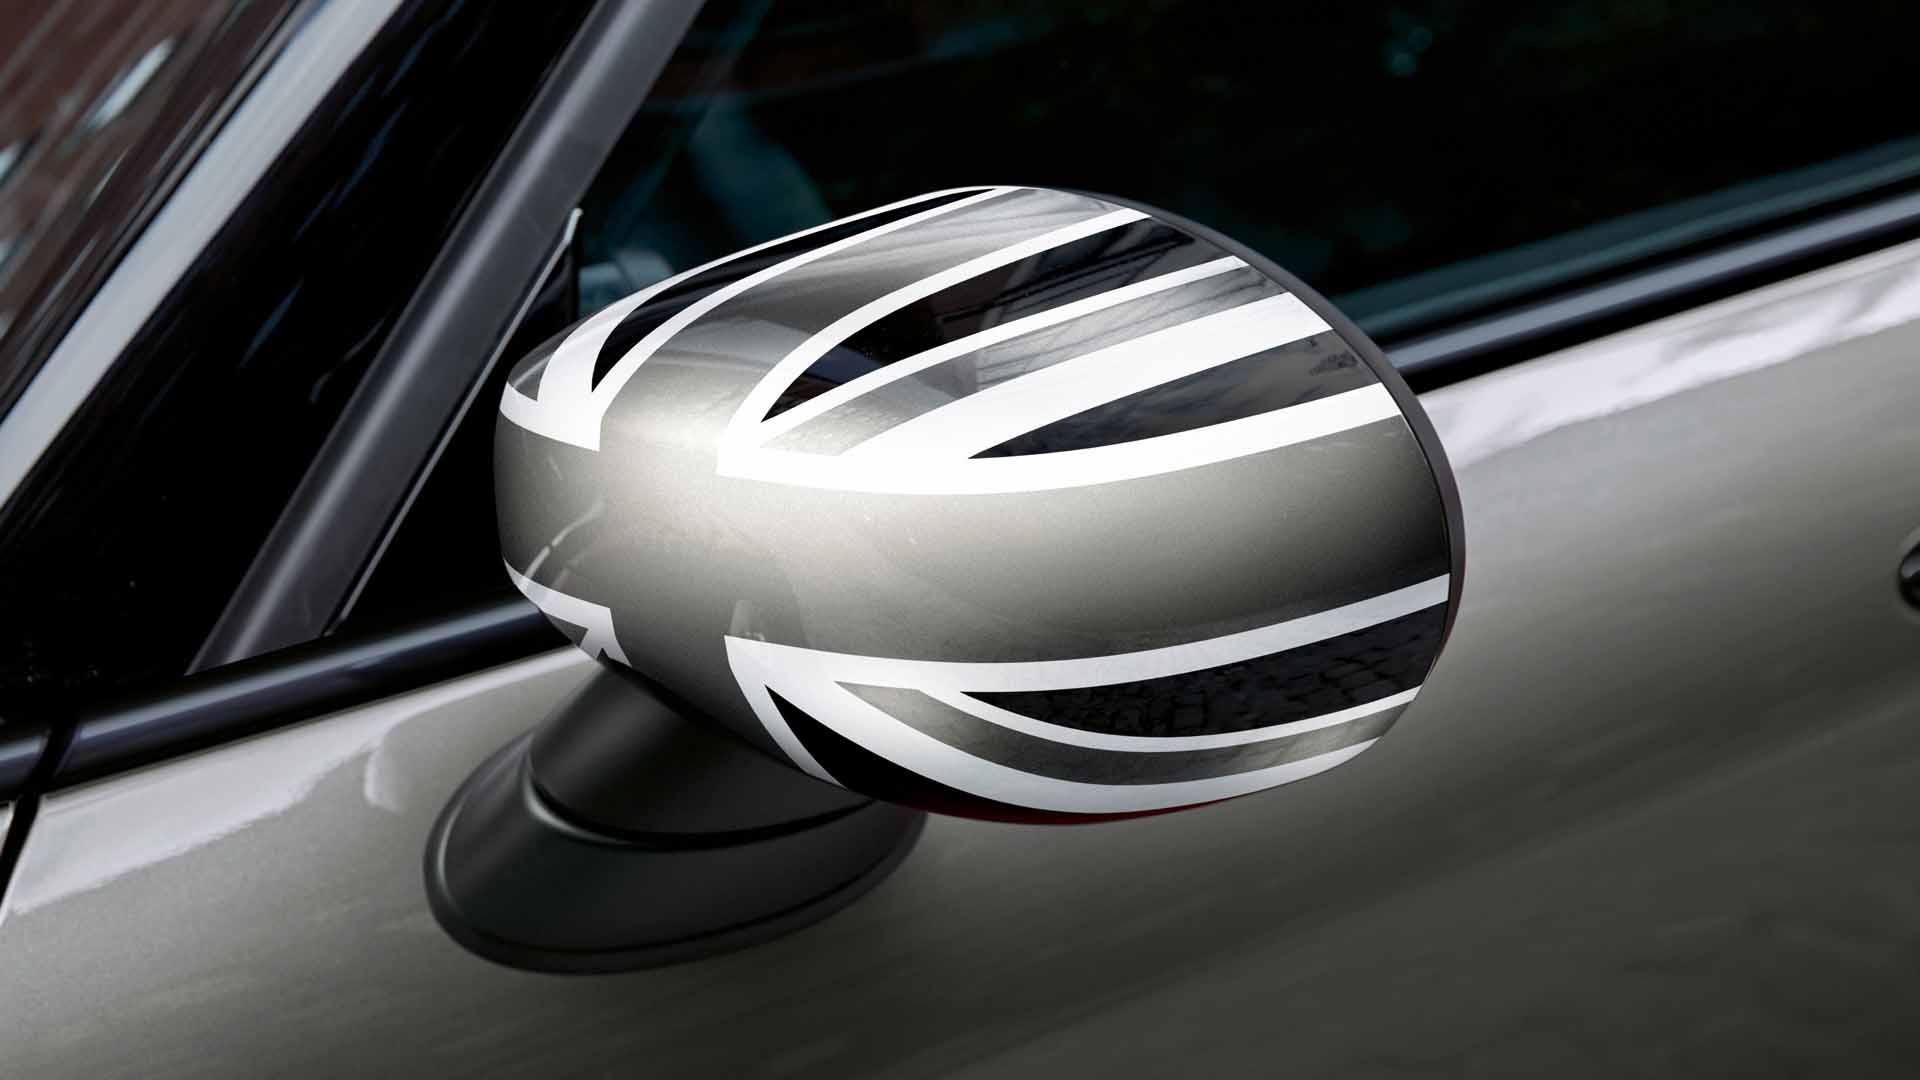 2x Carbon Look Außenspiegel Folie 3D für alle Auto Spiegel Kappen